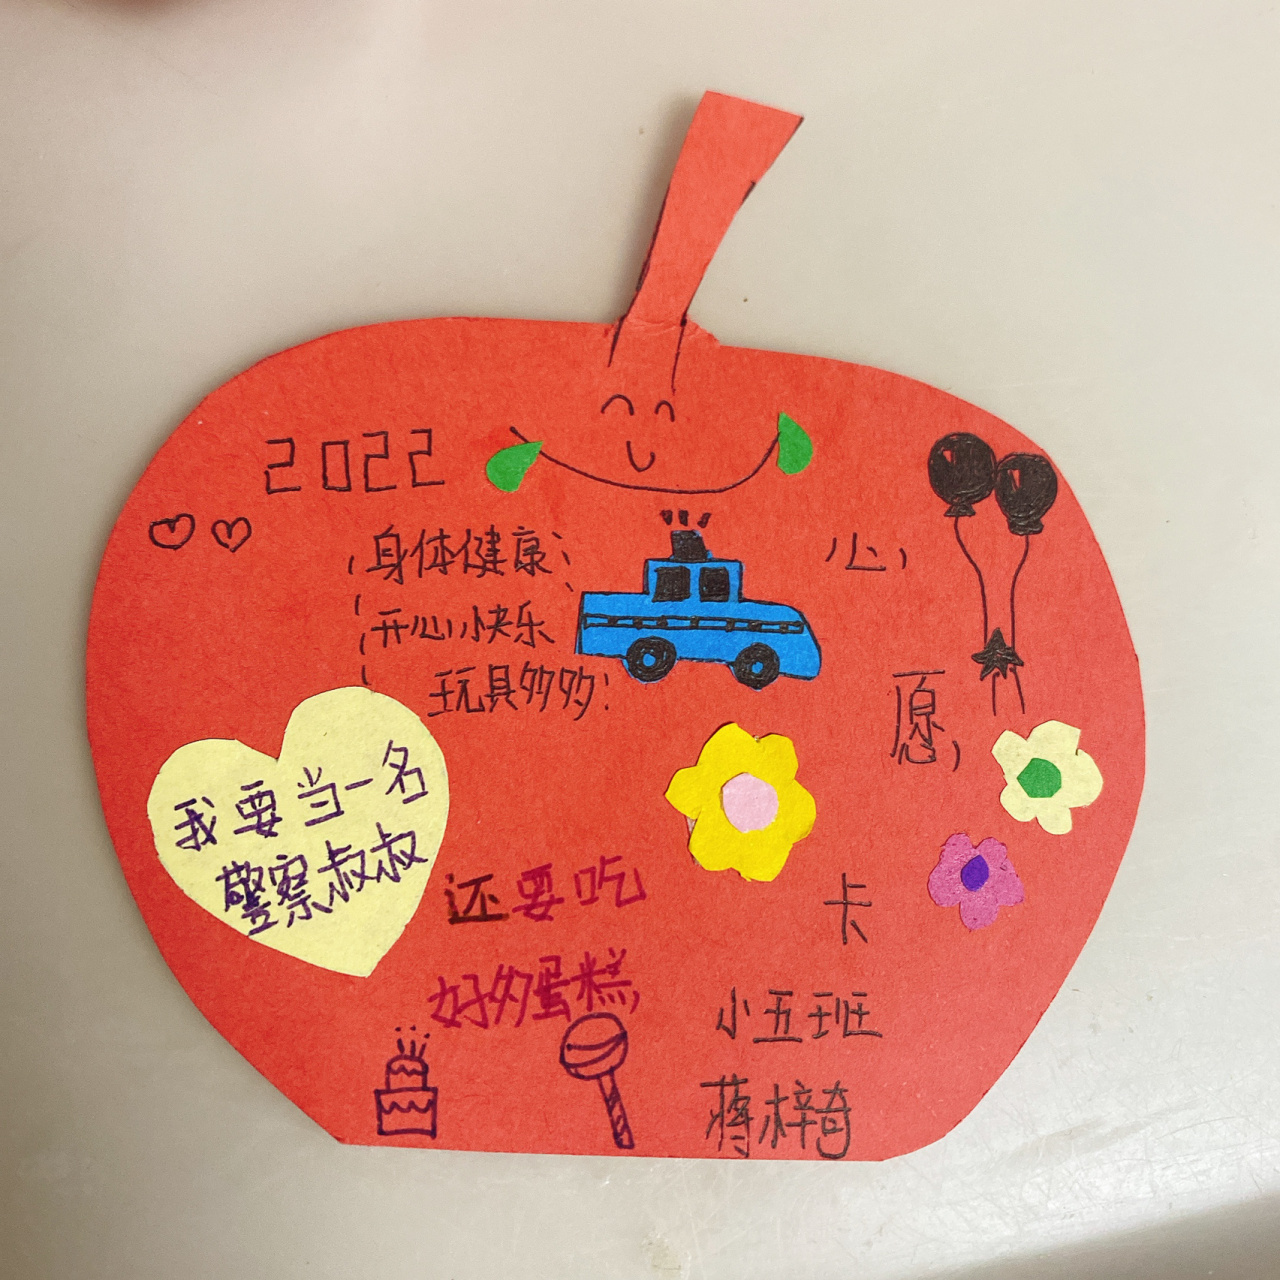 幼儿心愿卡 今天是开学第一天,小崽子需要做一张心愿卡挂在幼儿园里